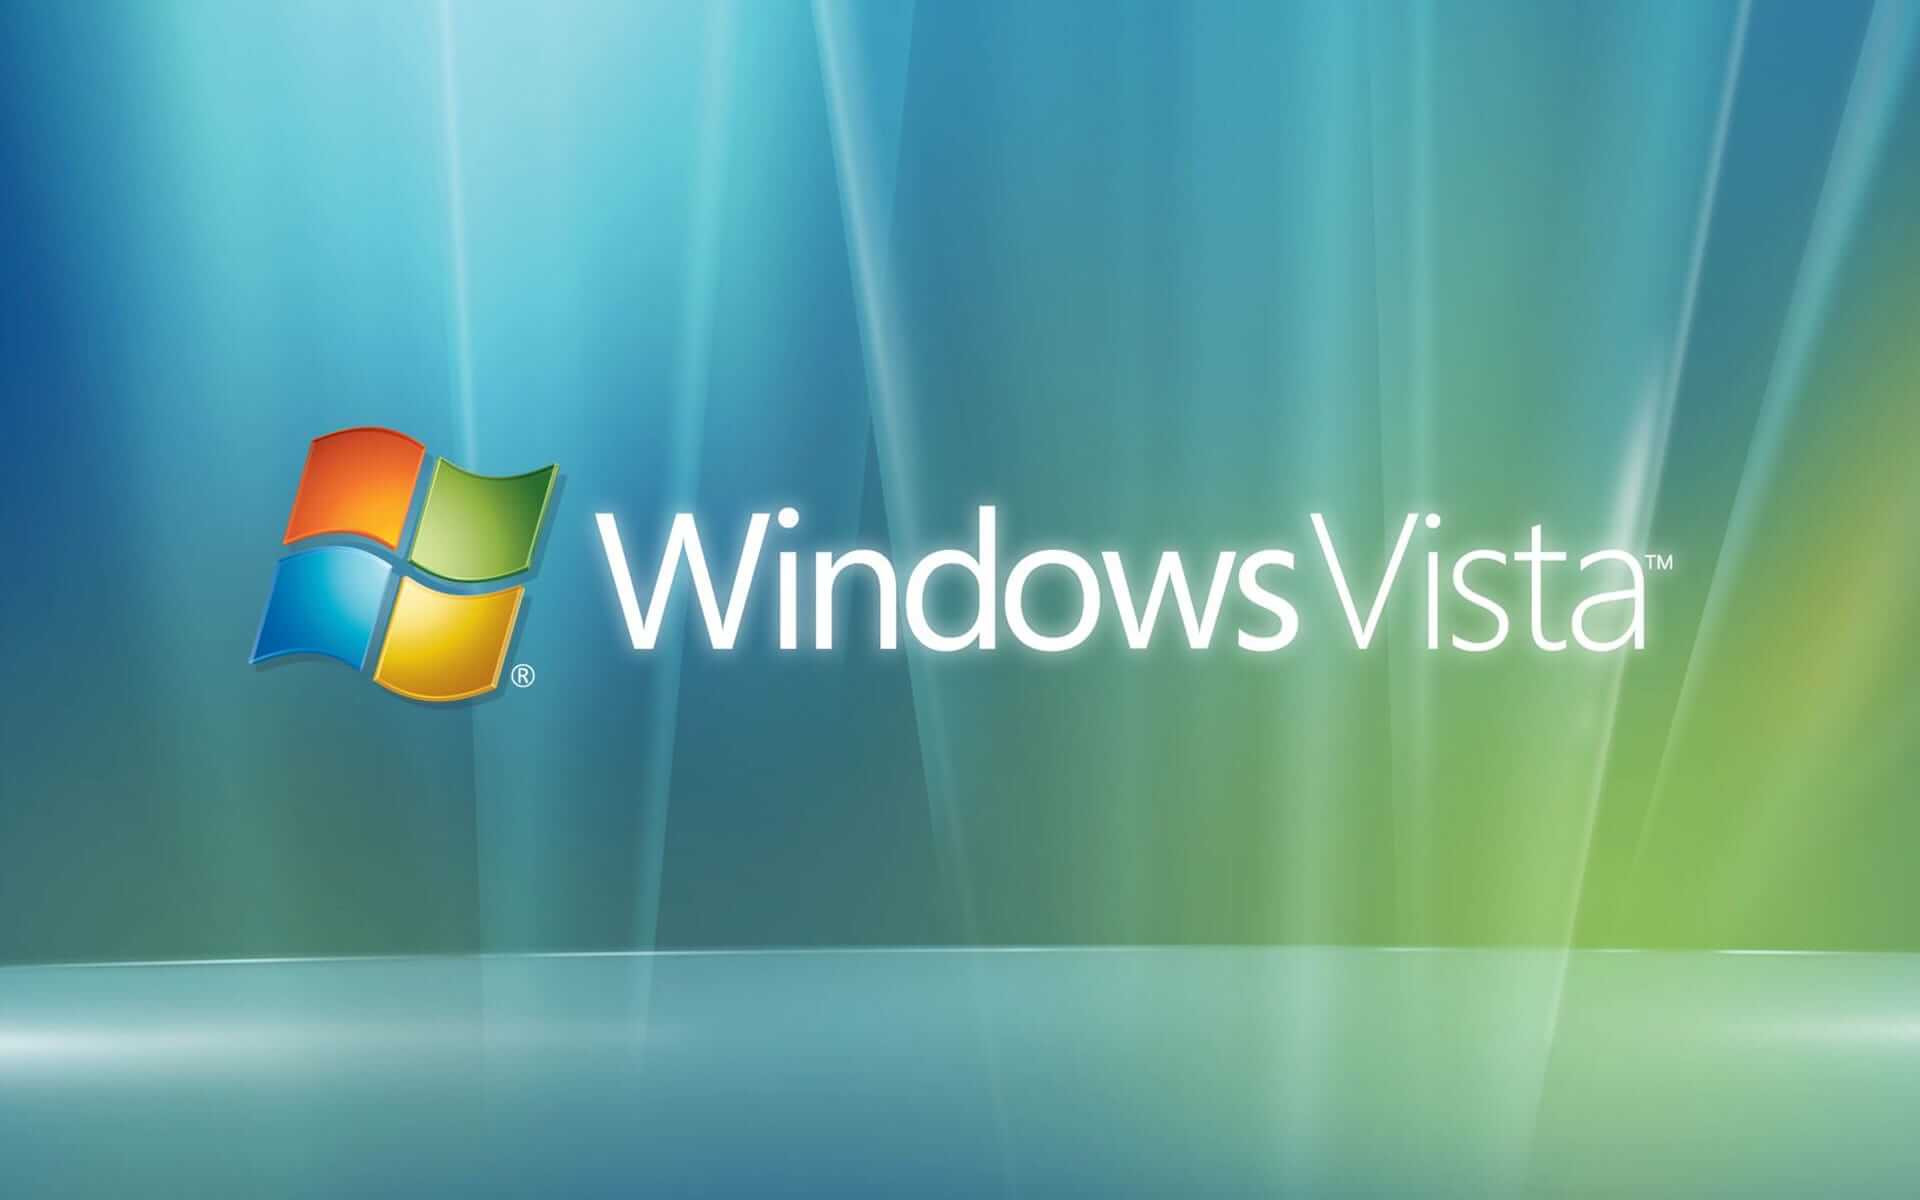 Windows Vista Crack